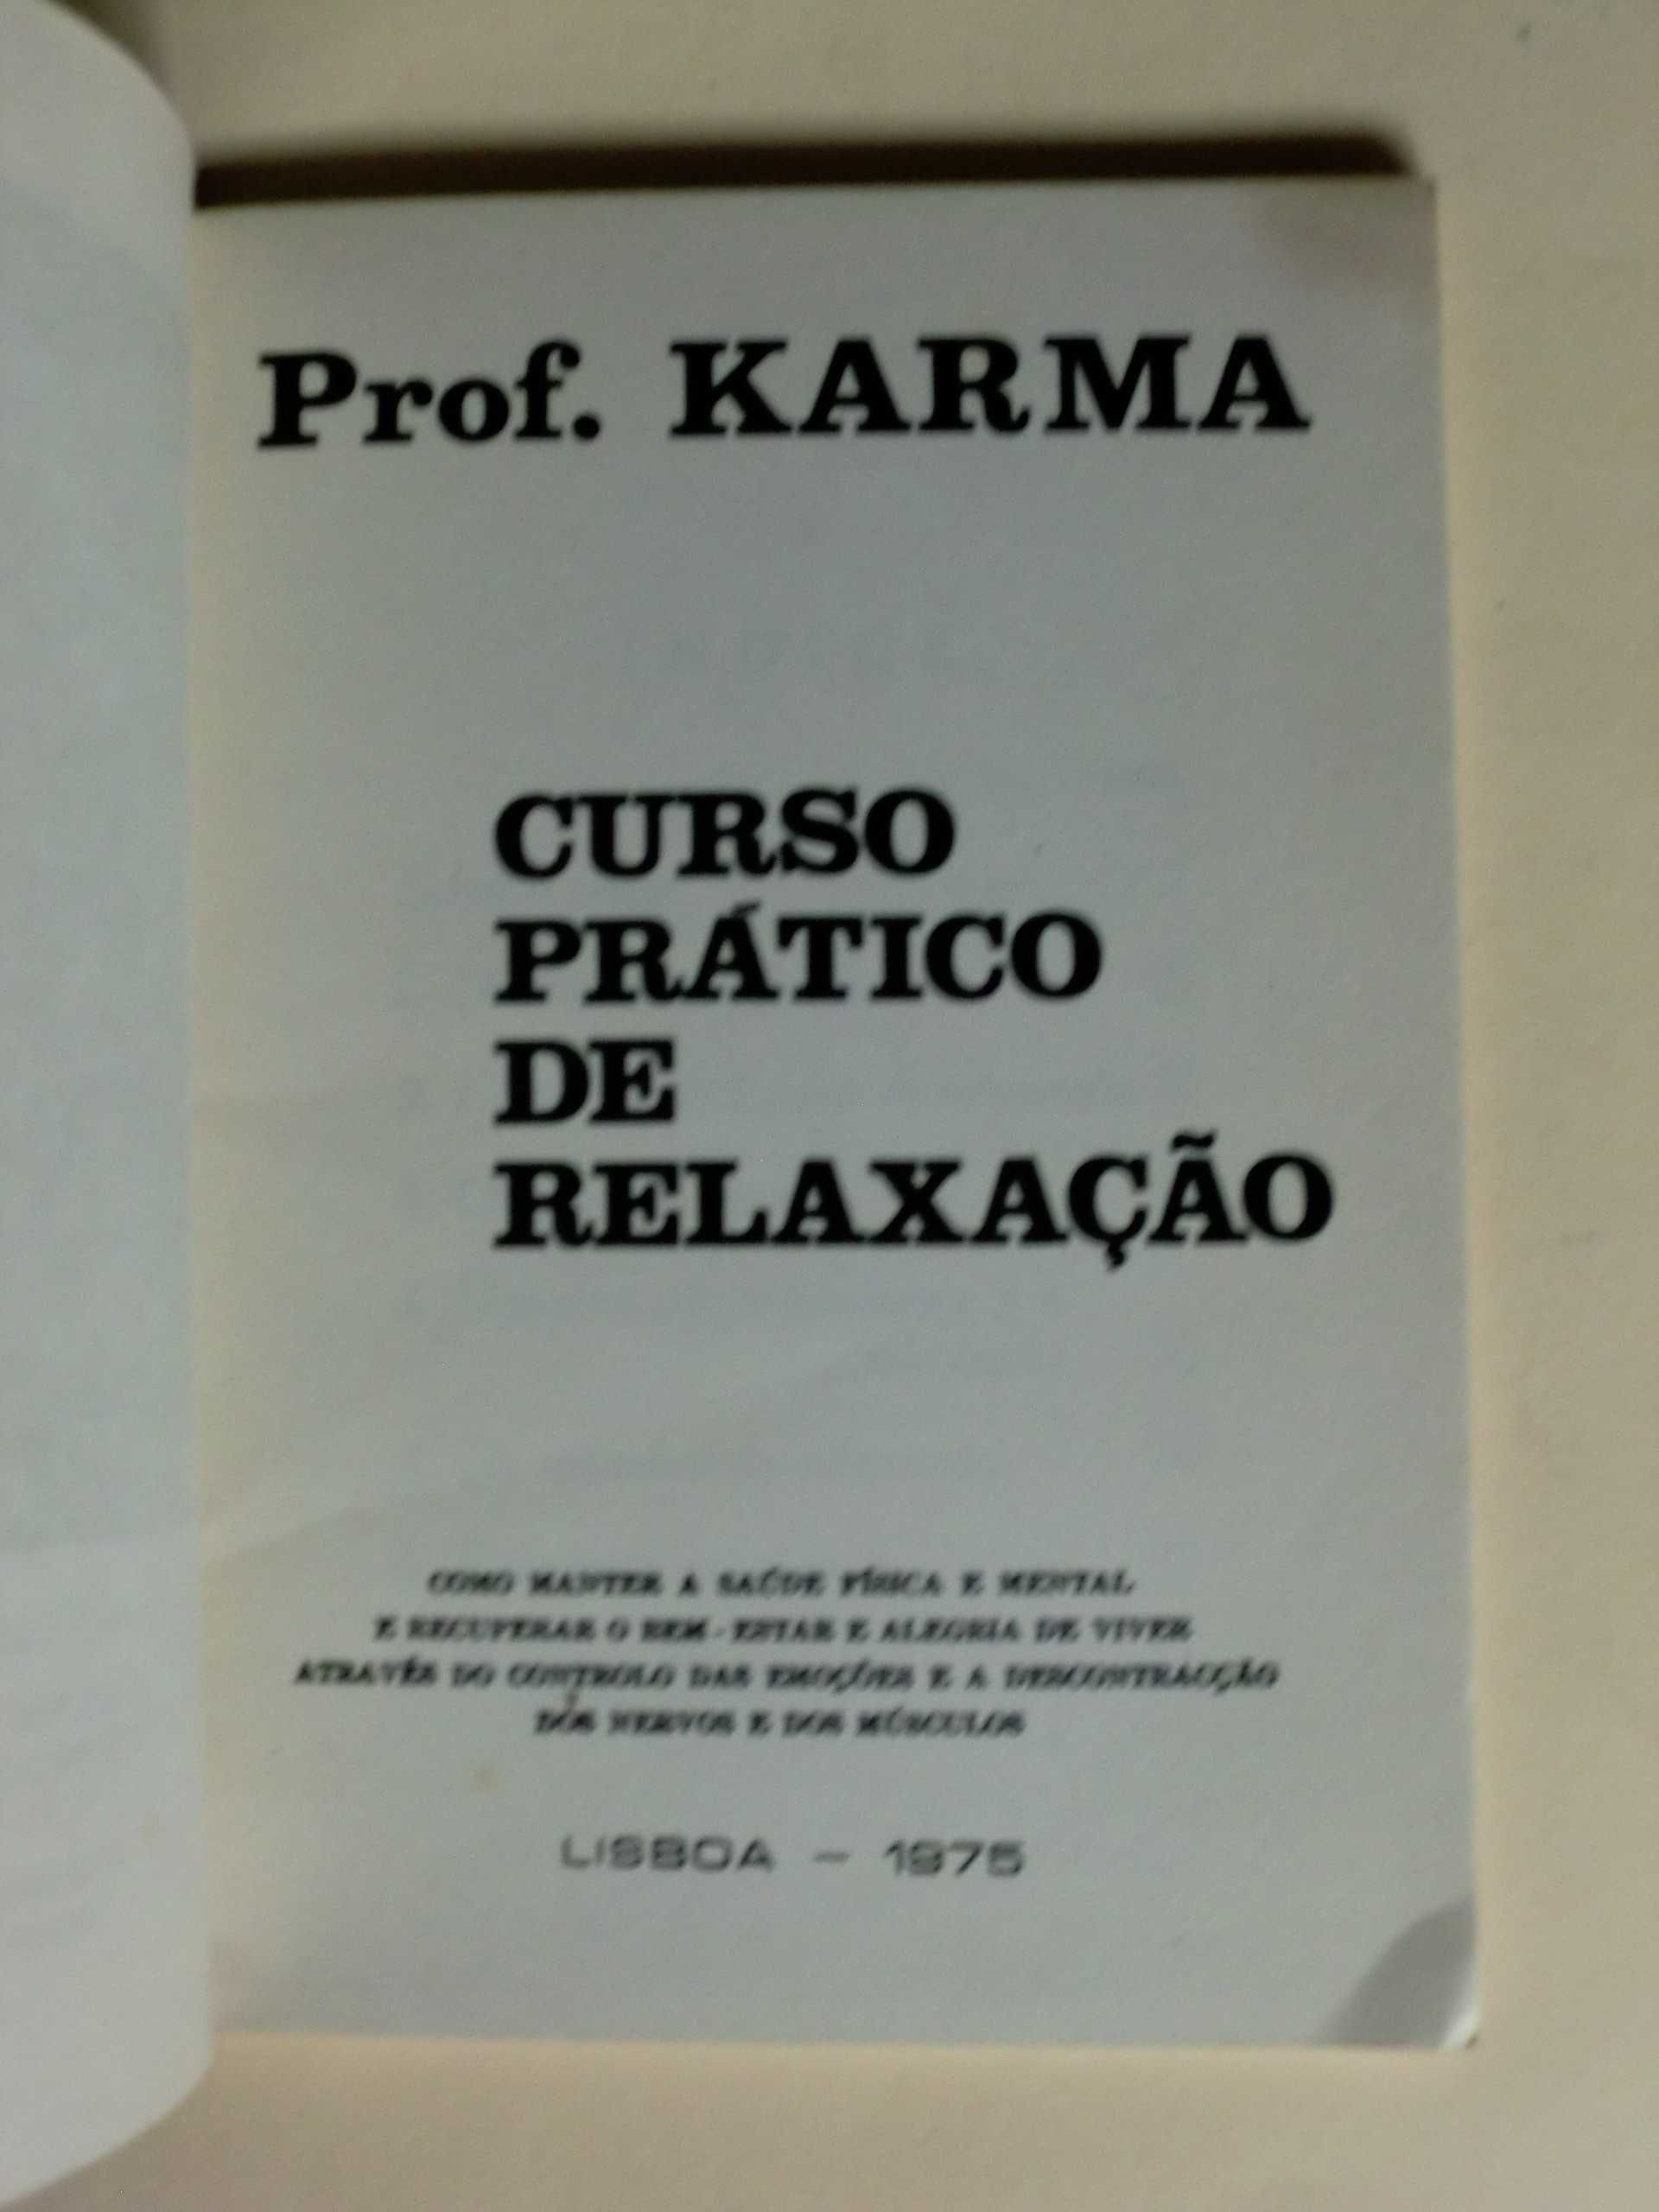 Curso Prático de Relaxação
do Prof. Karma